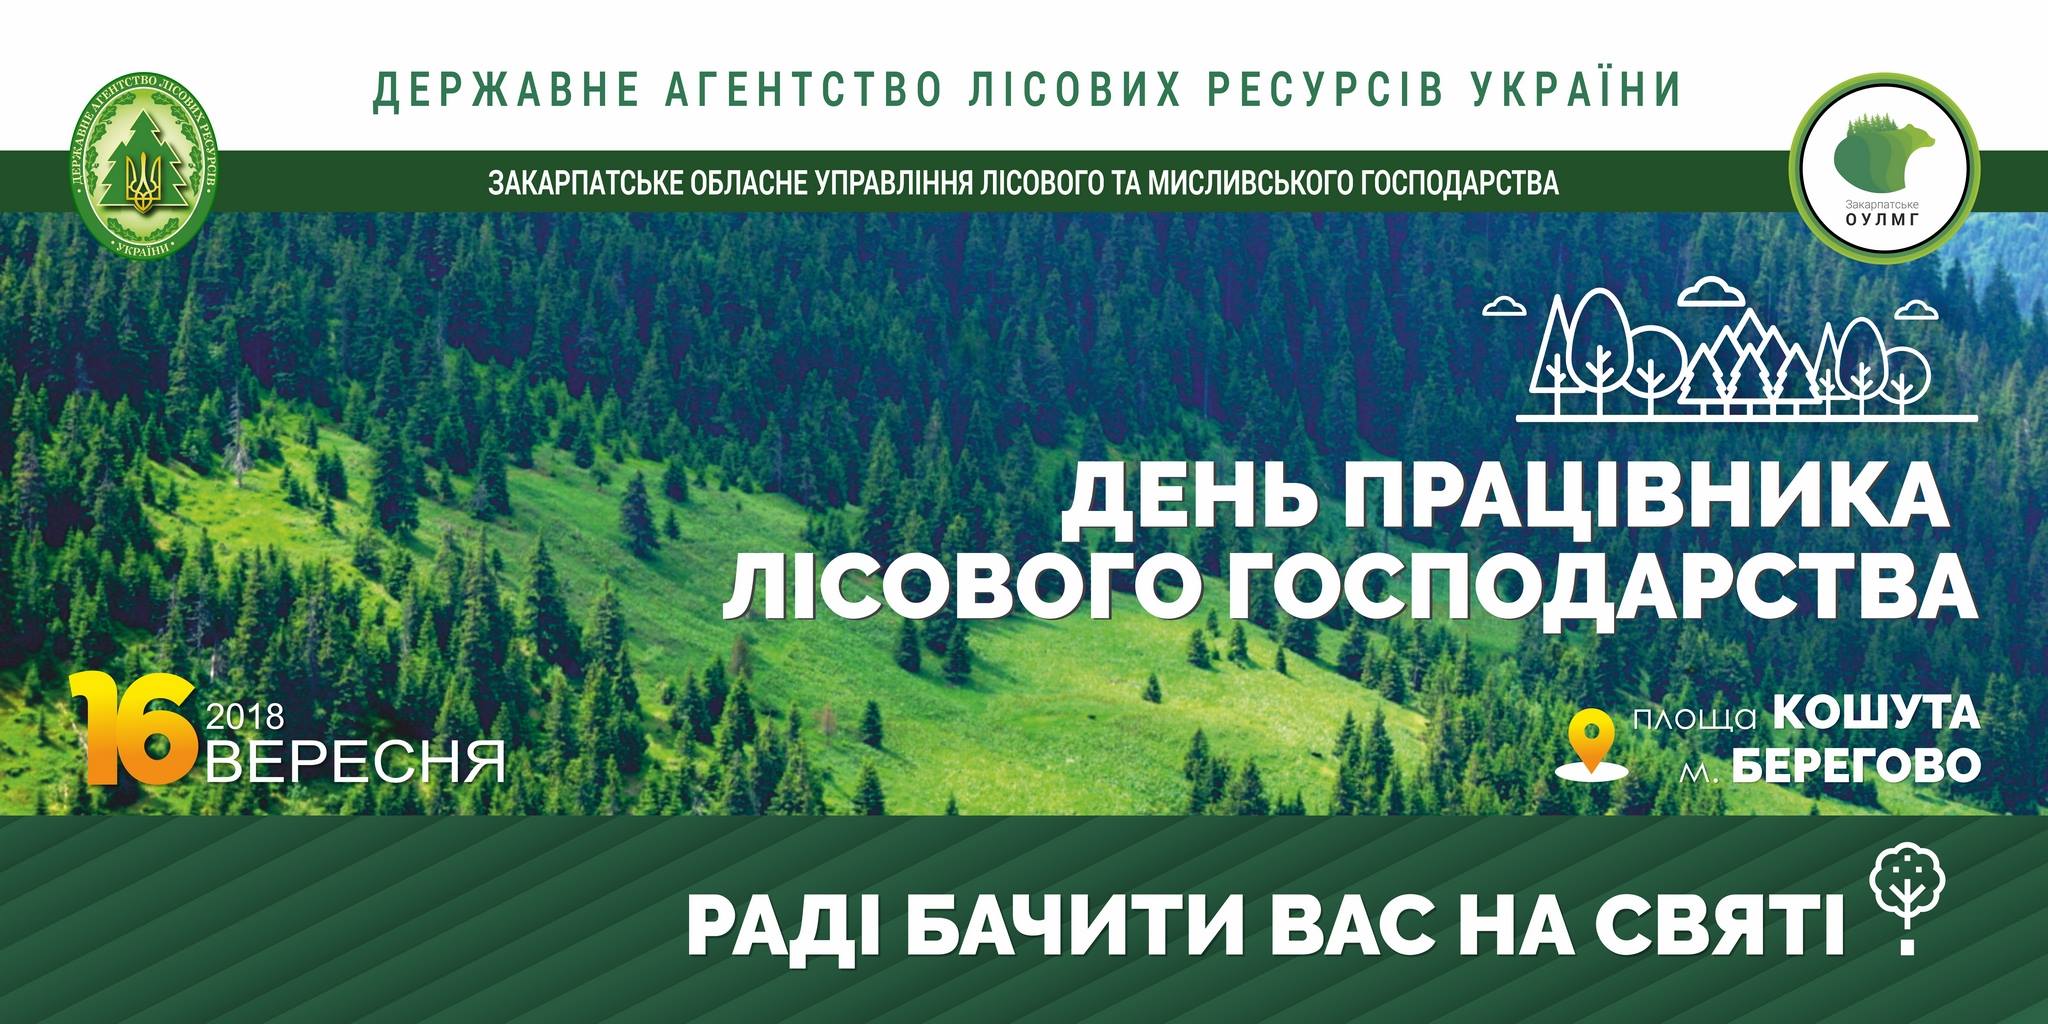 У неділю, 16 вересня, в м. Берегово у рамках всеукраїнських заходів до Дня працівників лісового господарства України відбудеться масштабне свято, яке буде присвячено дітям та праці лісівників.